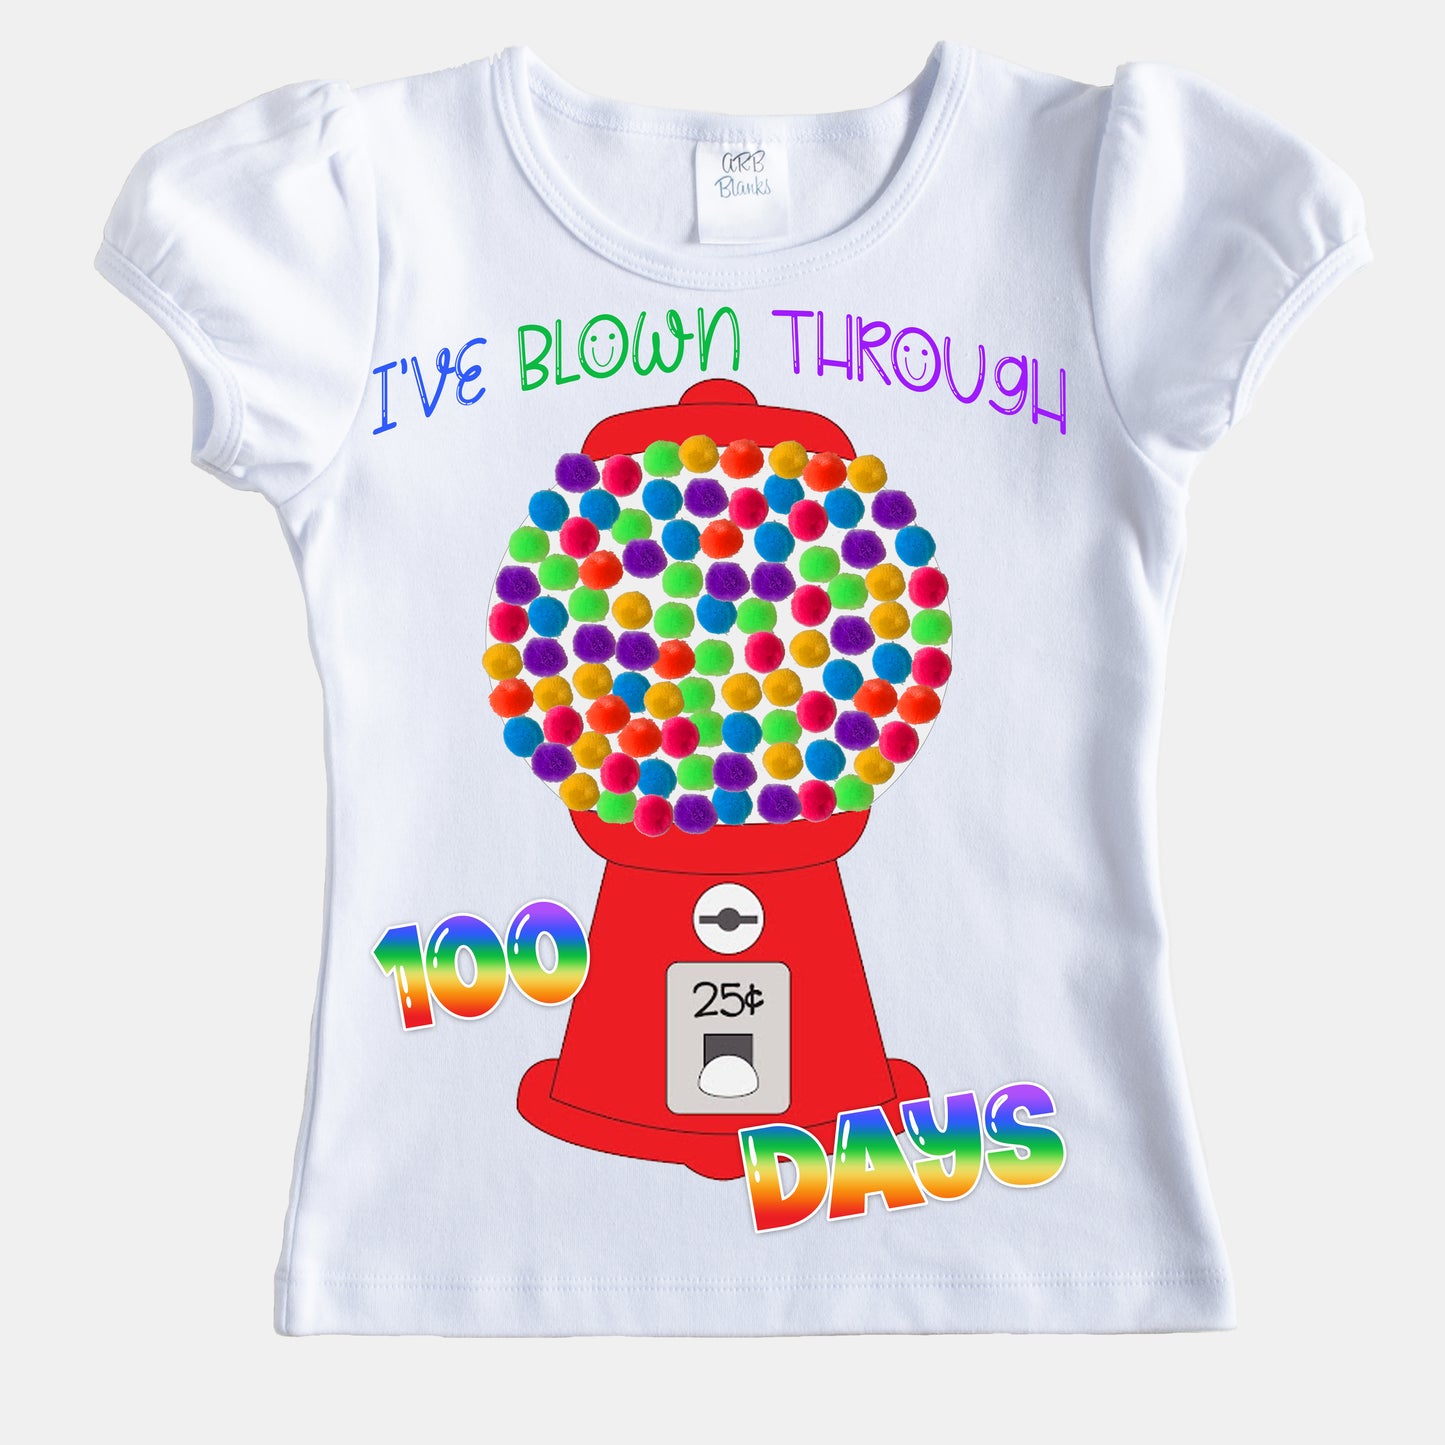 DIY 100th day of school shirt kit bubblegum